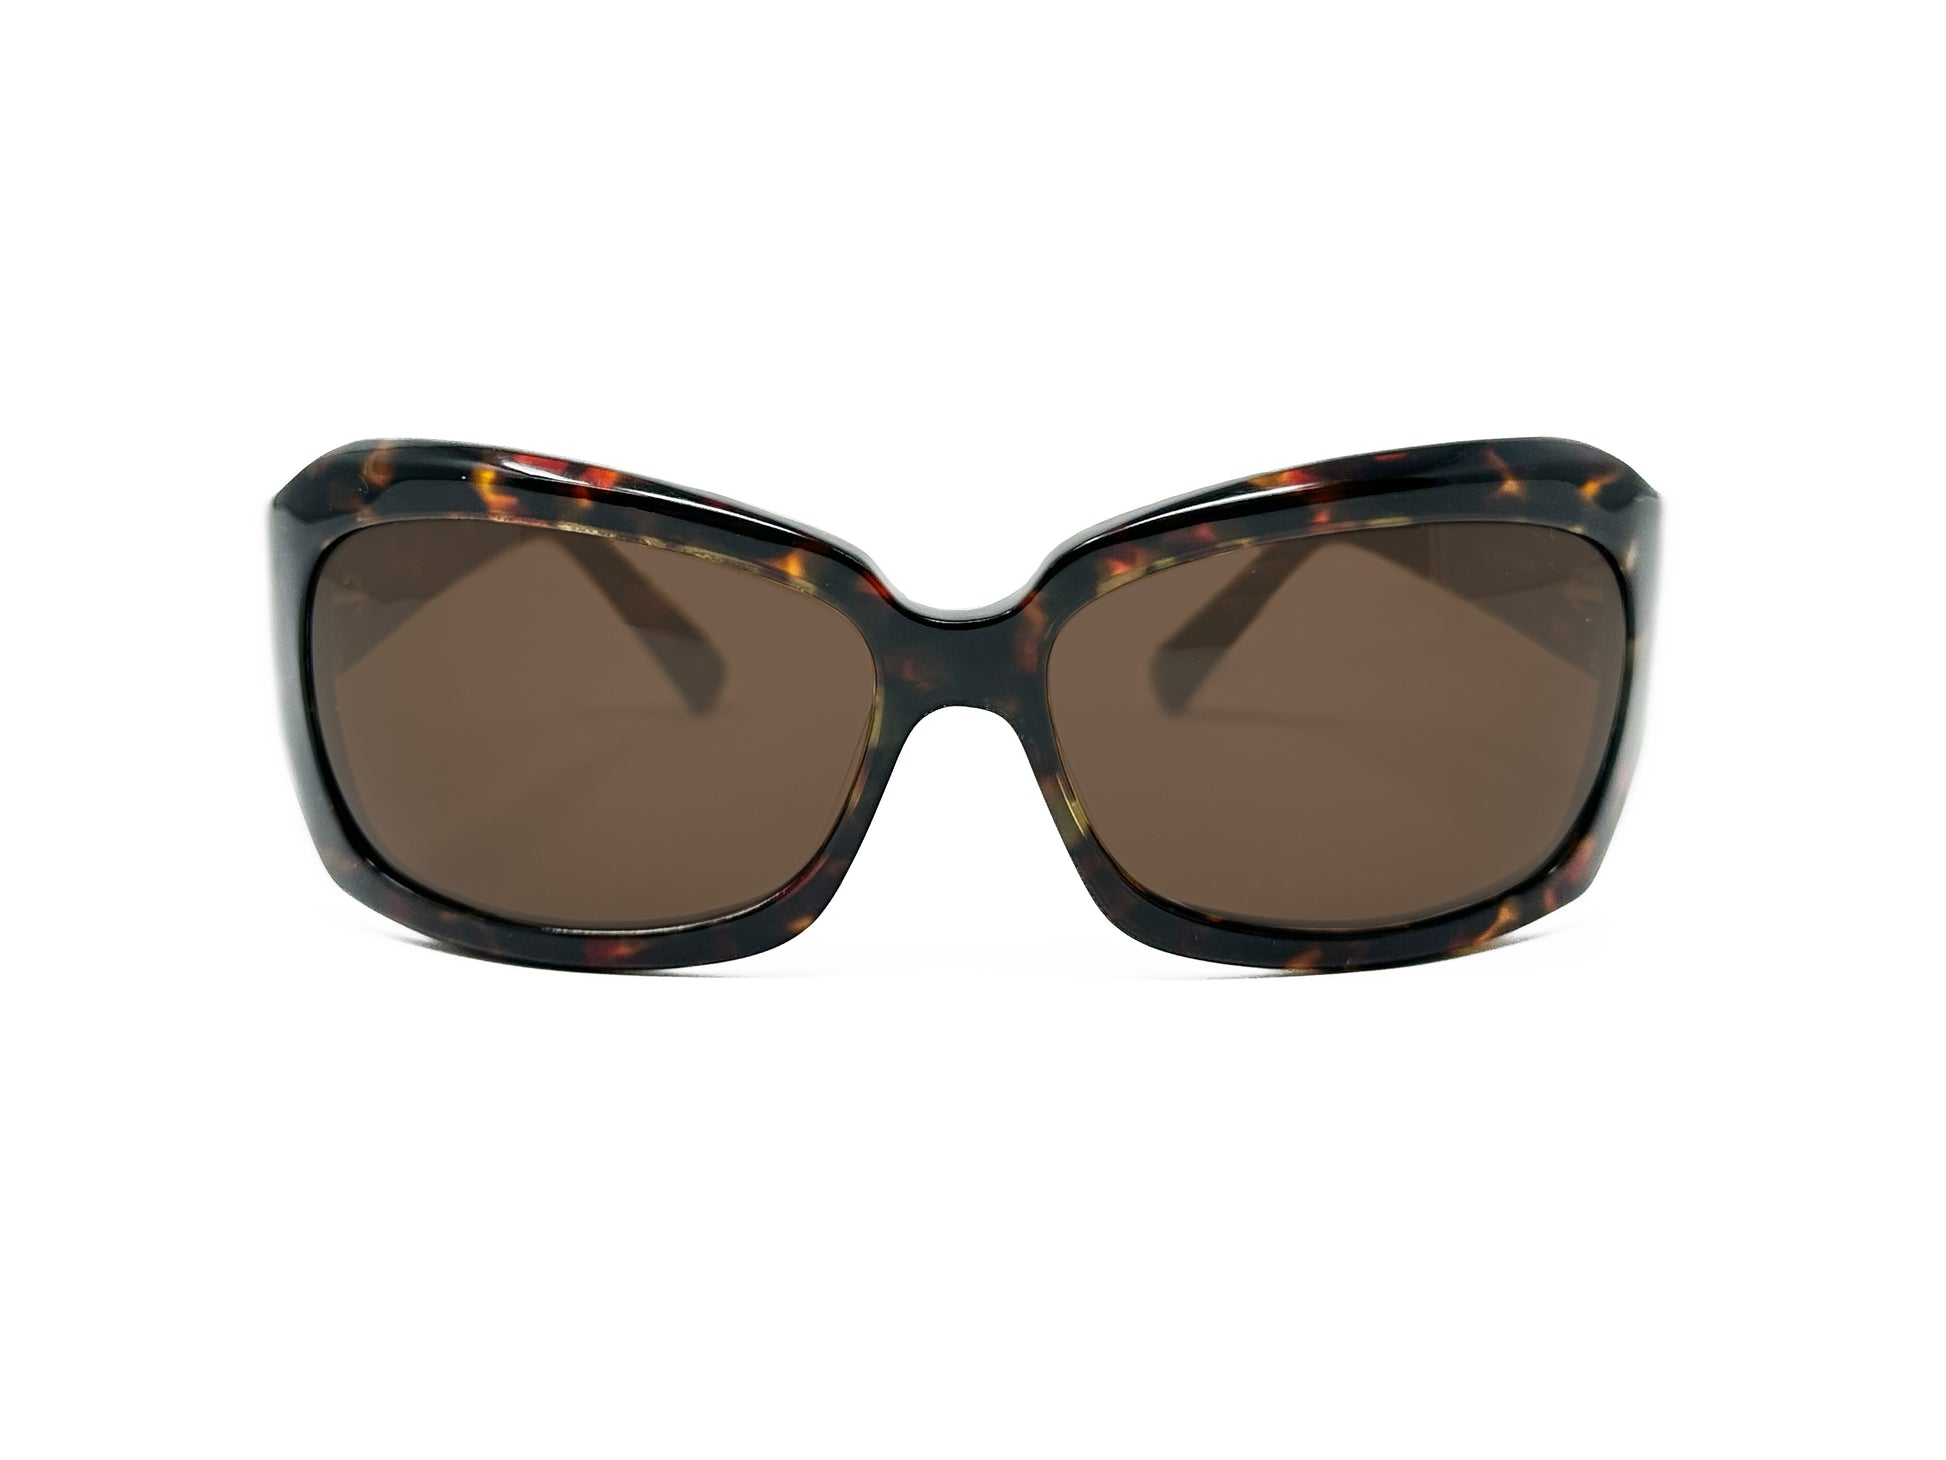 Viktlos large, wrap, acetate sunglasses. Model: 2101. Color: 4 - Tortoise. Front view. 